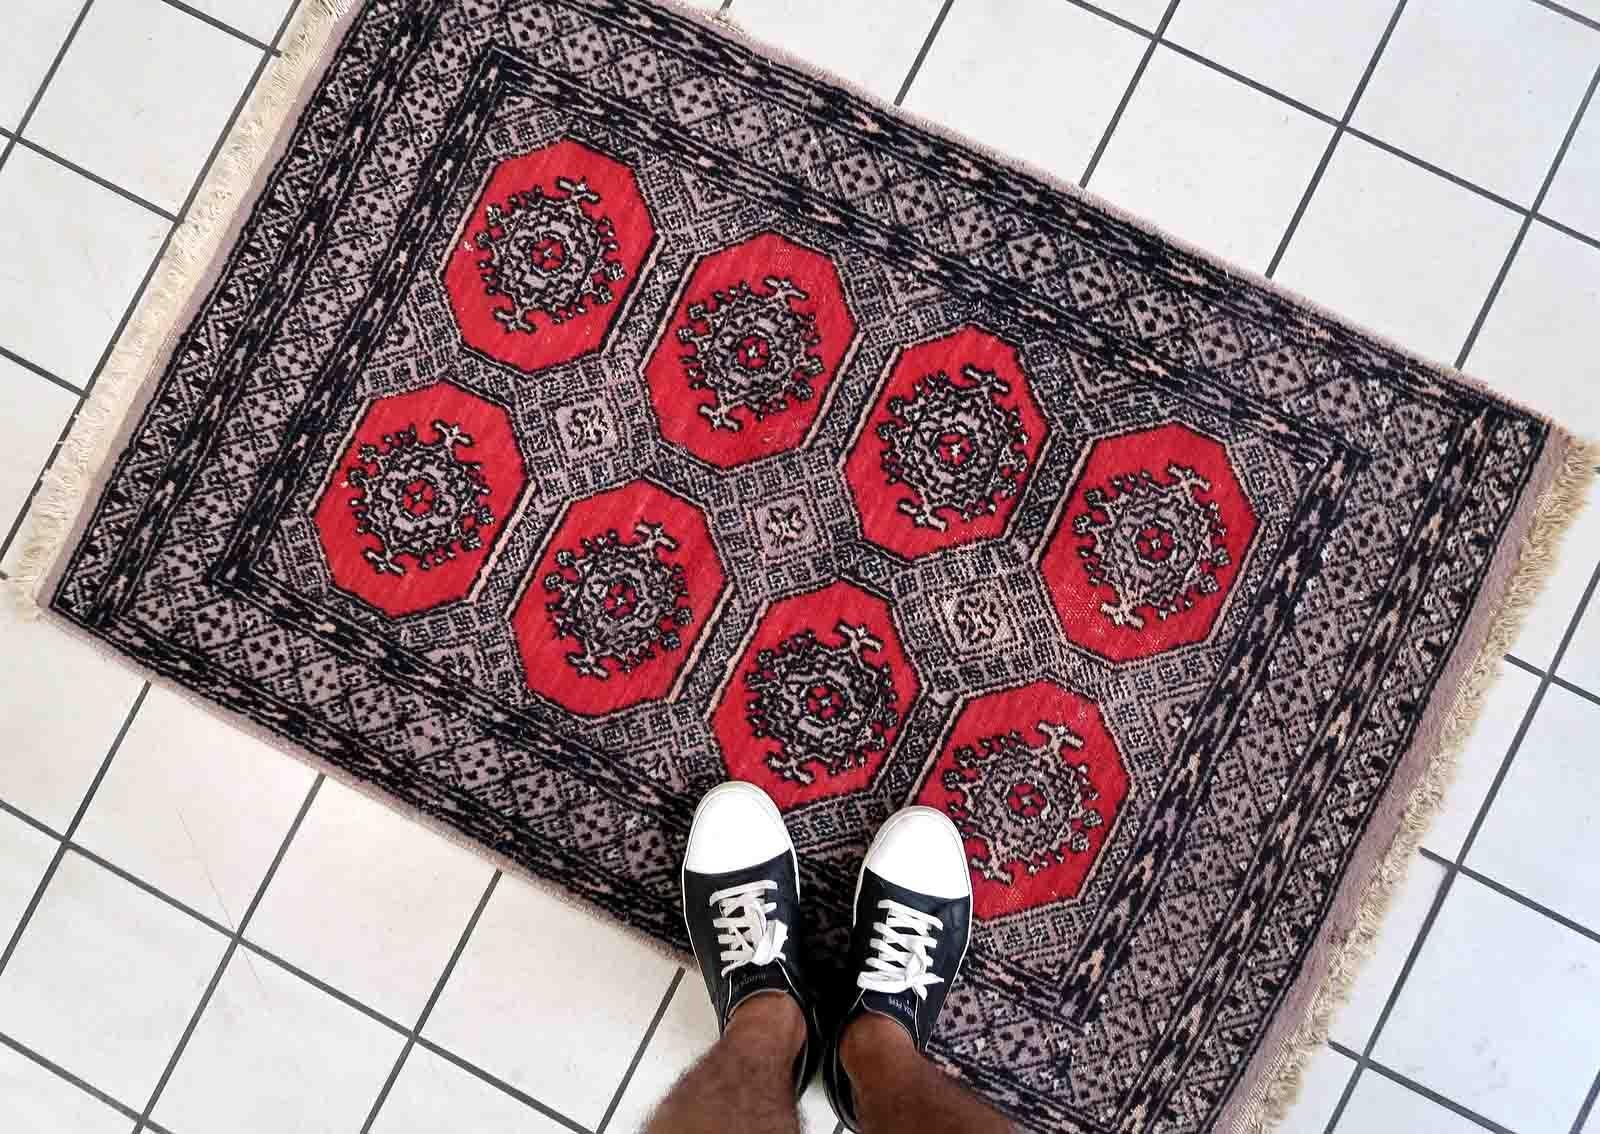 Handgefertigter usbekischer Buchara-Teppich in traditionellem Design und roter Farbe. Der Teppich stammt aus dem Ende des 20. Jahrhunderts und ist im Originalzustand, er hat einen etwas niedrigen Flor.

-Zustand: original, etwas niedriger